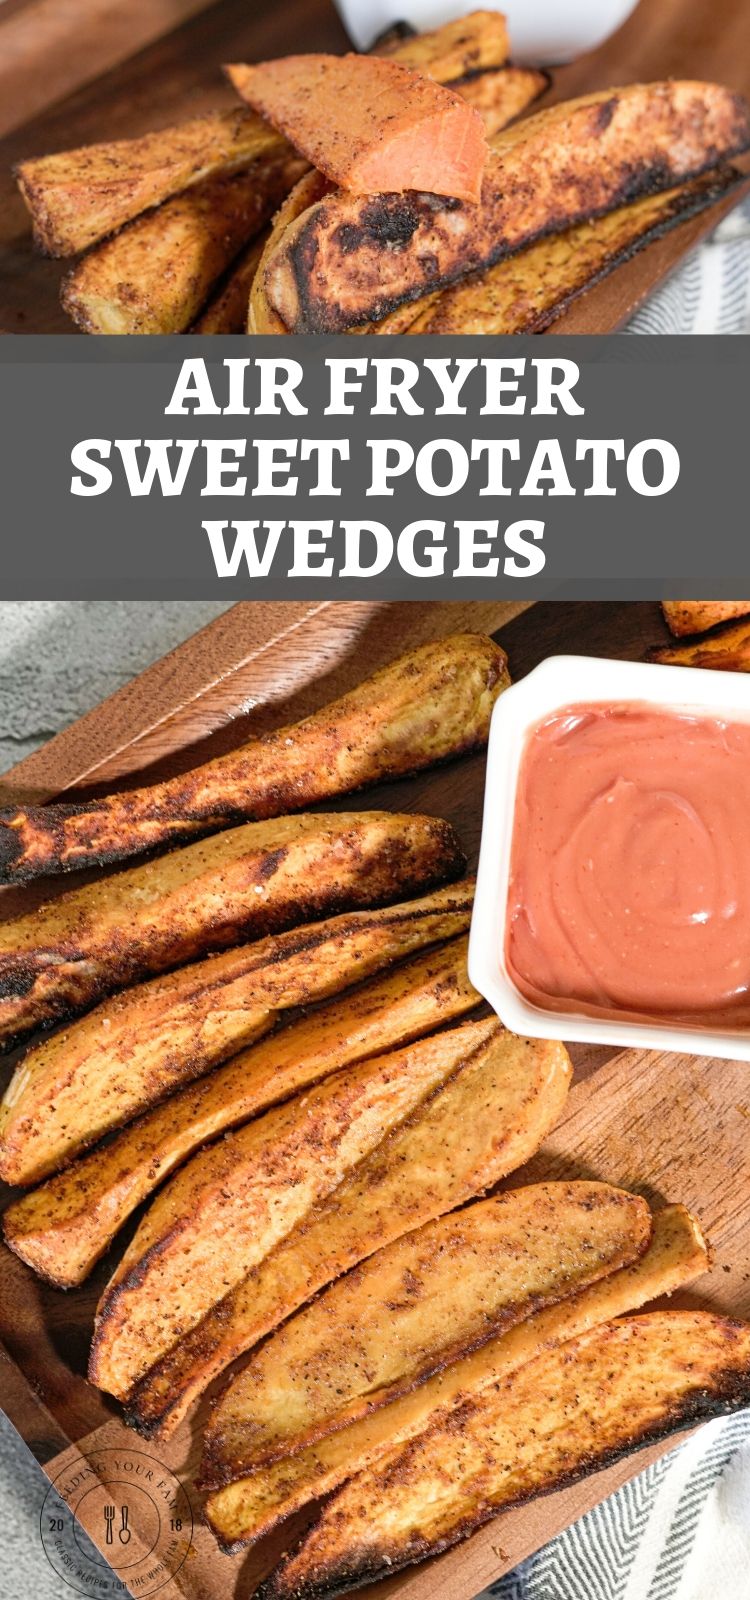 images of roasted sweet potato wedges